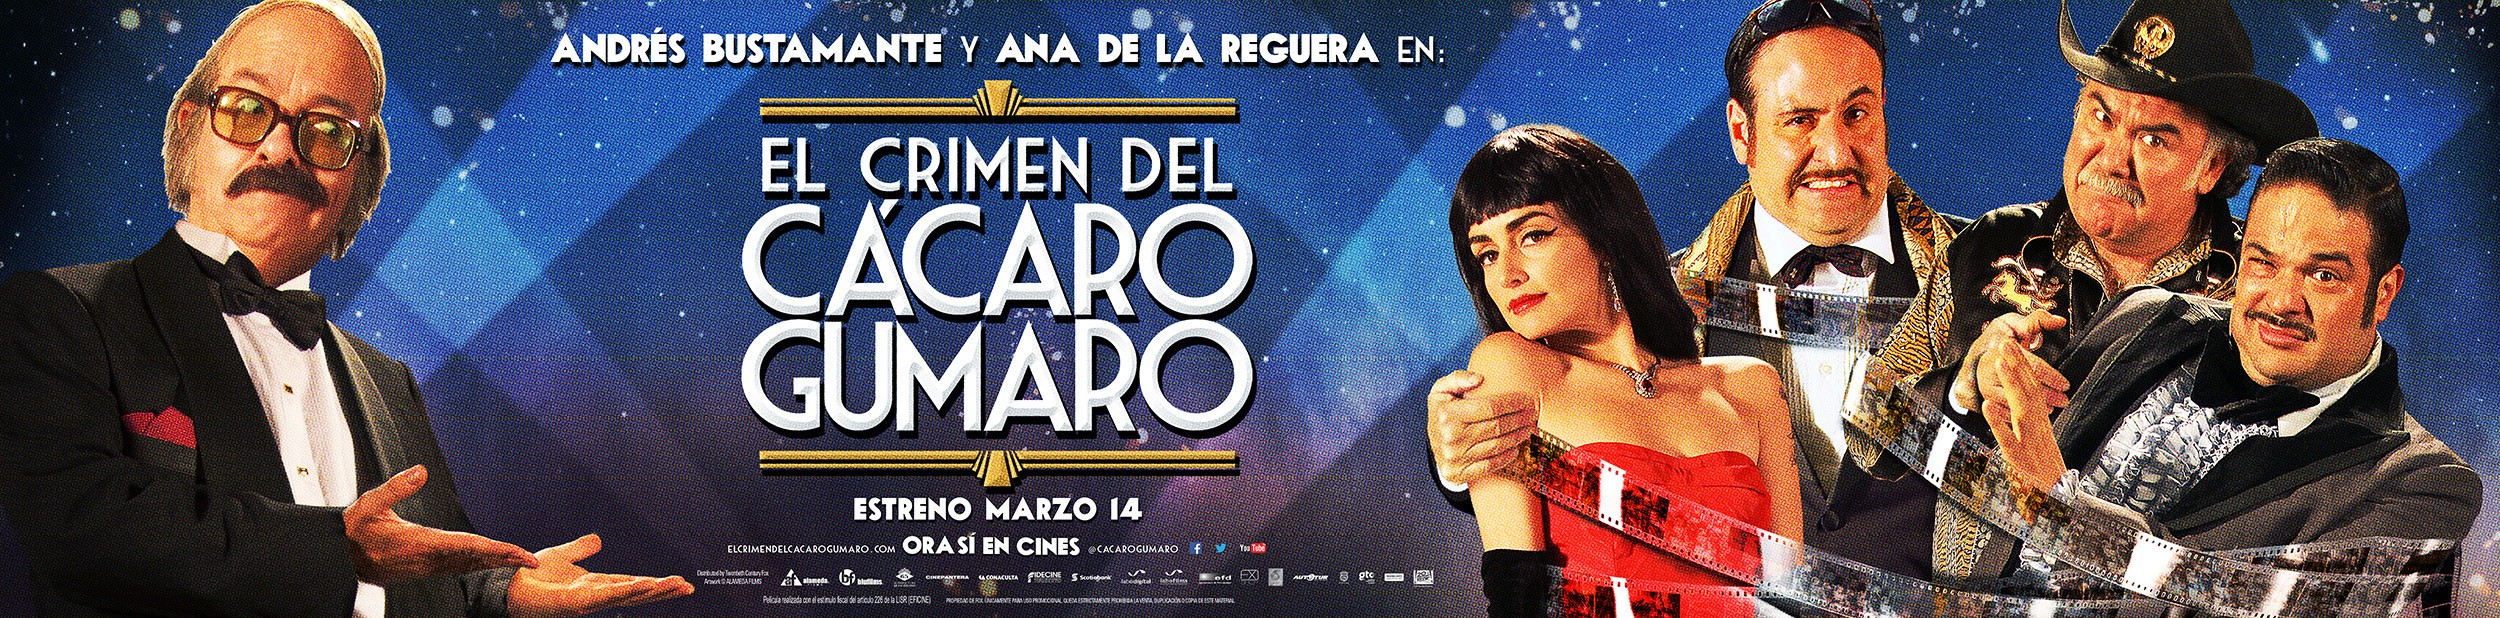 Mega Sized Movie Poster Image for El Crimen del Cacaro Gumaro (#12 of 12)